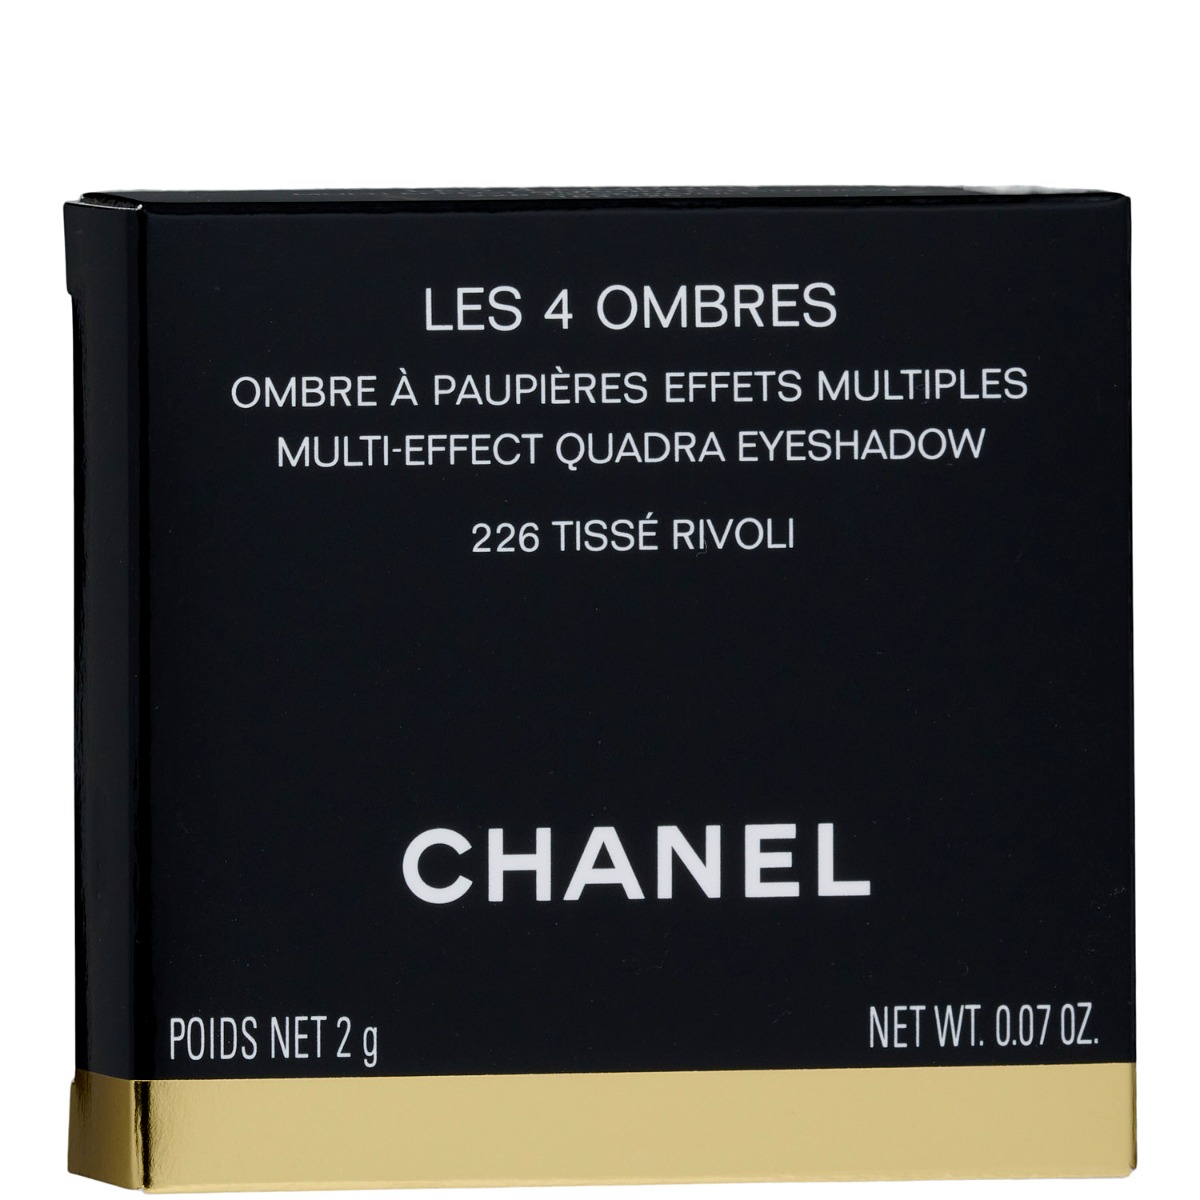 Chanel Tisse Rivoli (226) Les 4 Ombres Multi-Effect Quadra